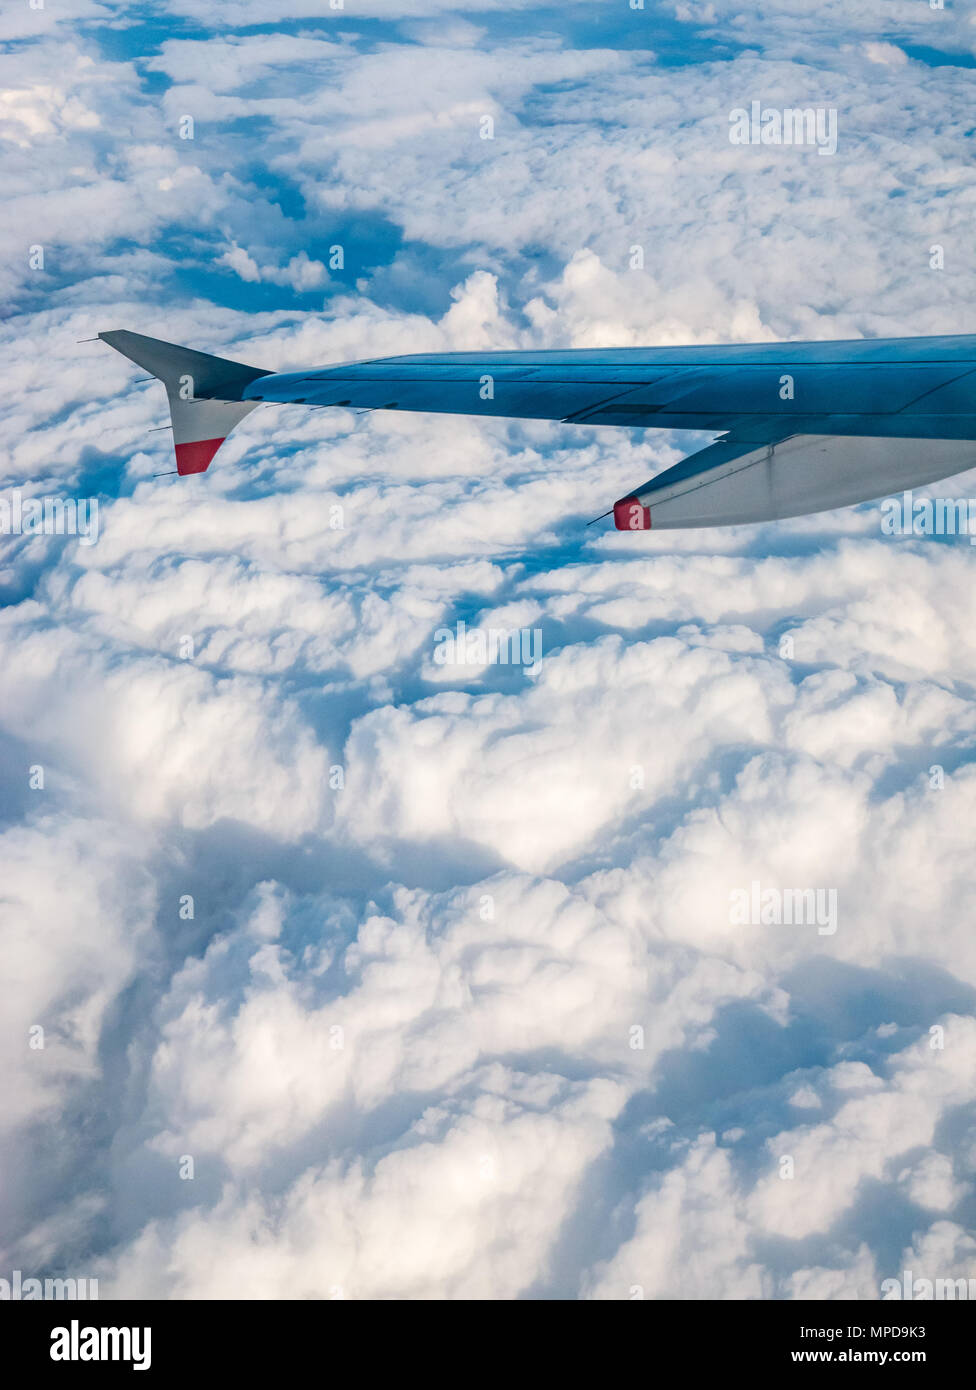 British Airways Airbus 319 aile d'avion vu d'avion en vol au-dessus de la fenêtre de puffy nuages blancs en Royaume-Uni Banque D'Images